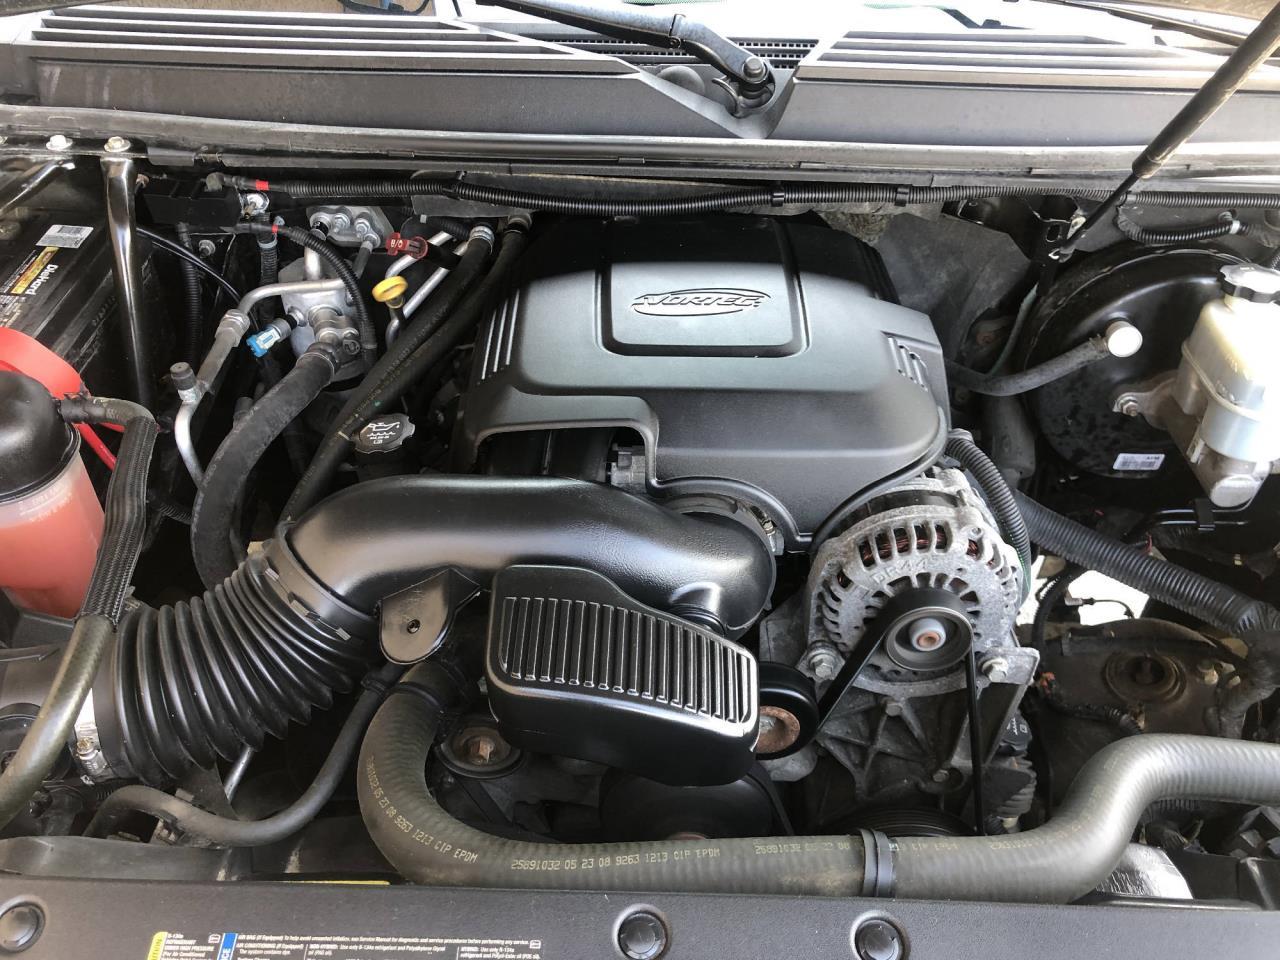 2008 Gmc Yukon Engine 5.3 L V8